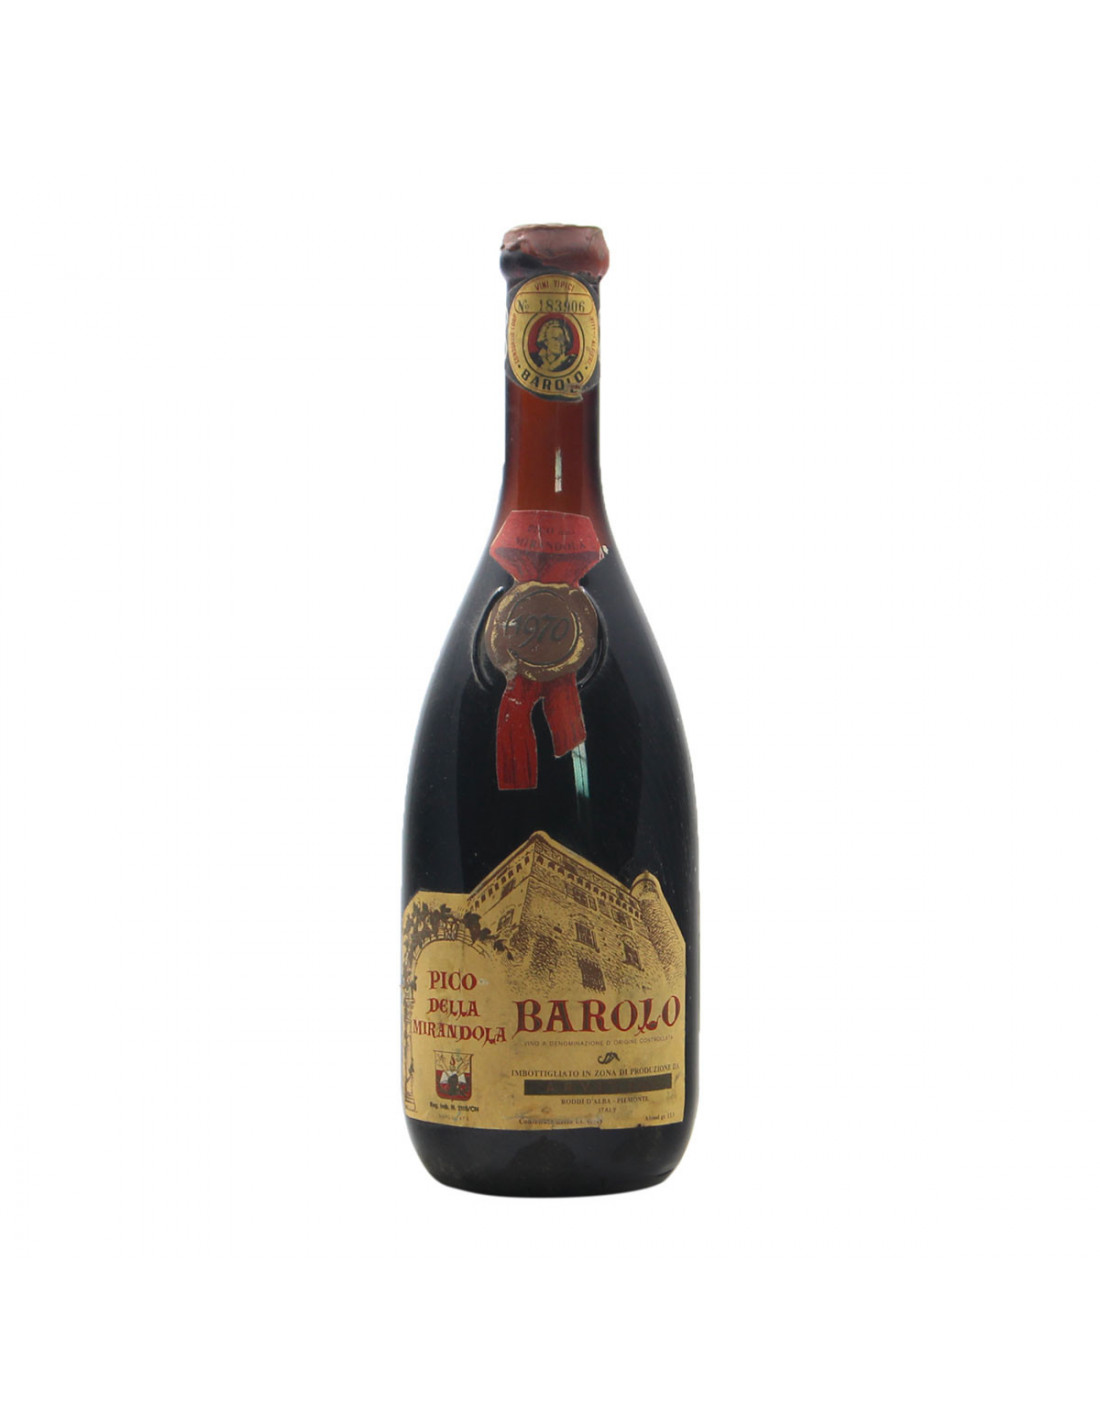 BAROLO 1970 PICO DELLA MIRANDOLA Grandi Bottiglie